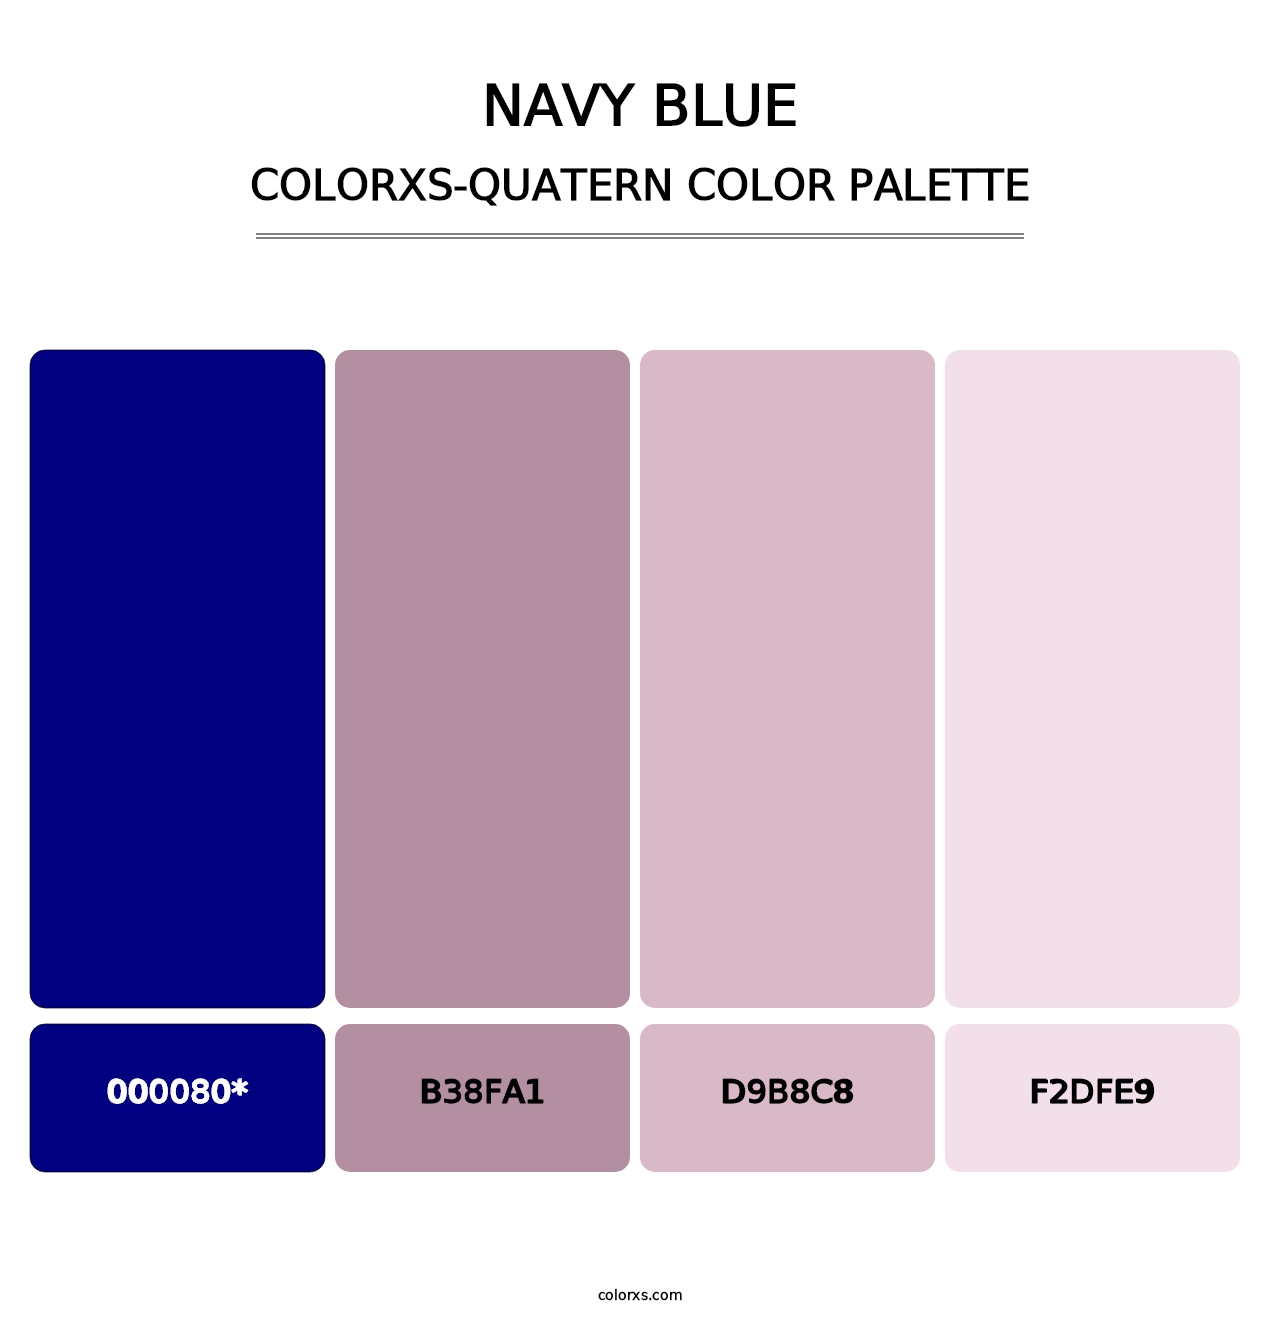 Navy Blue - Colorxs Quatern Palette